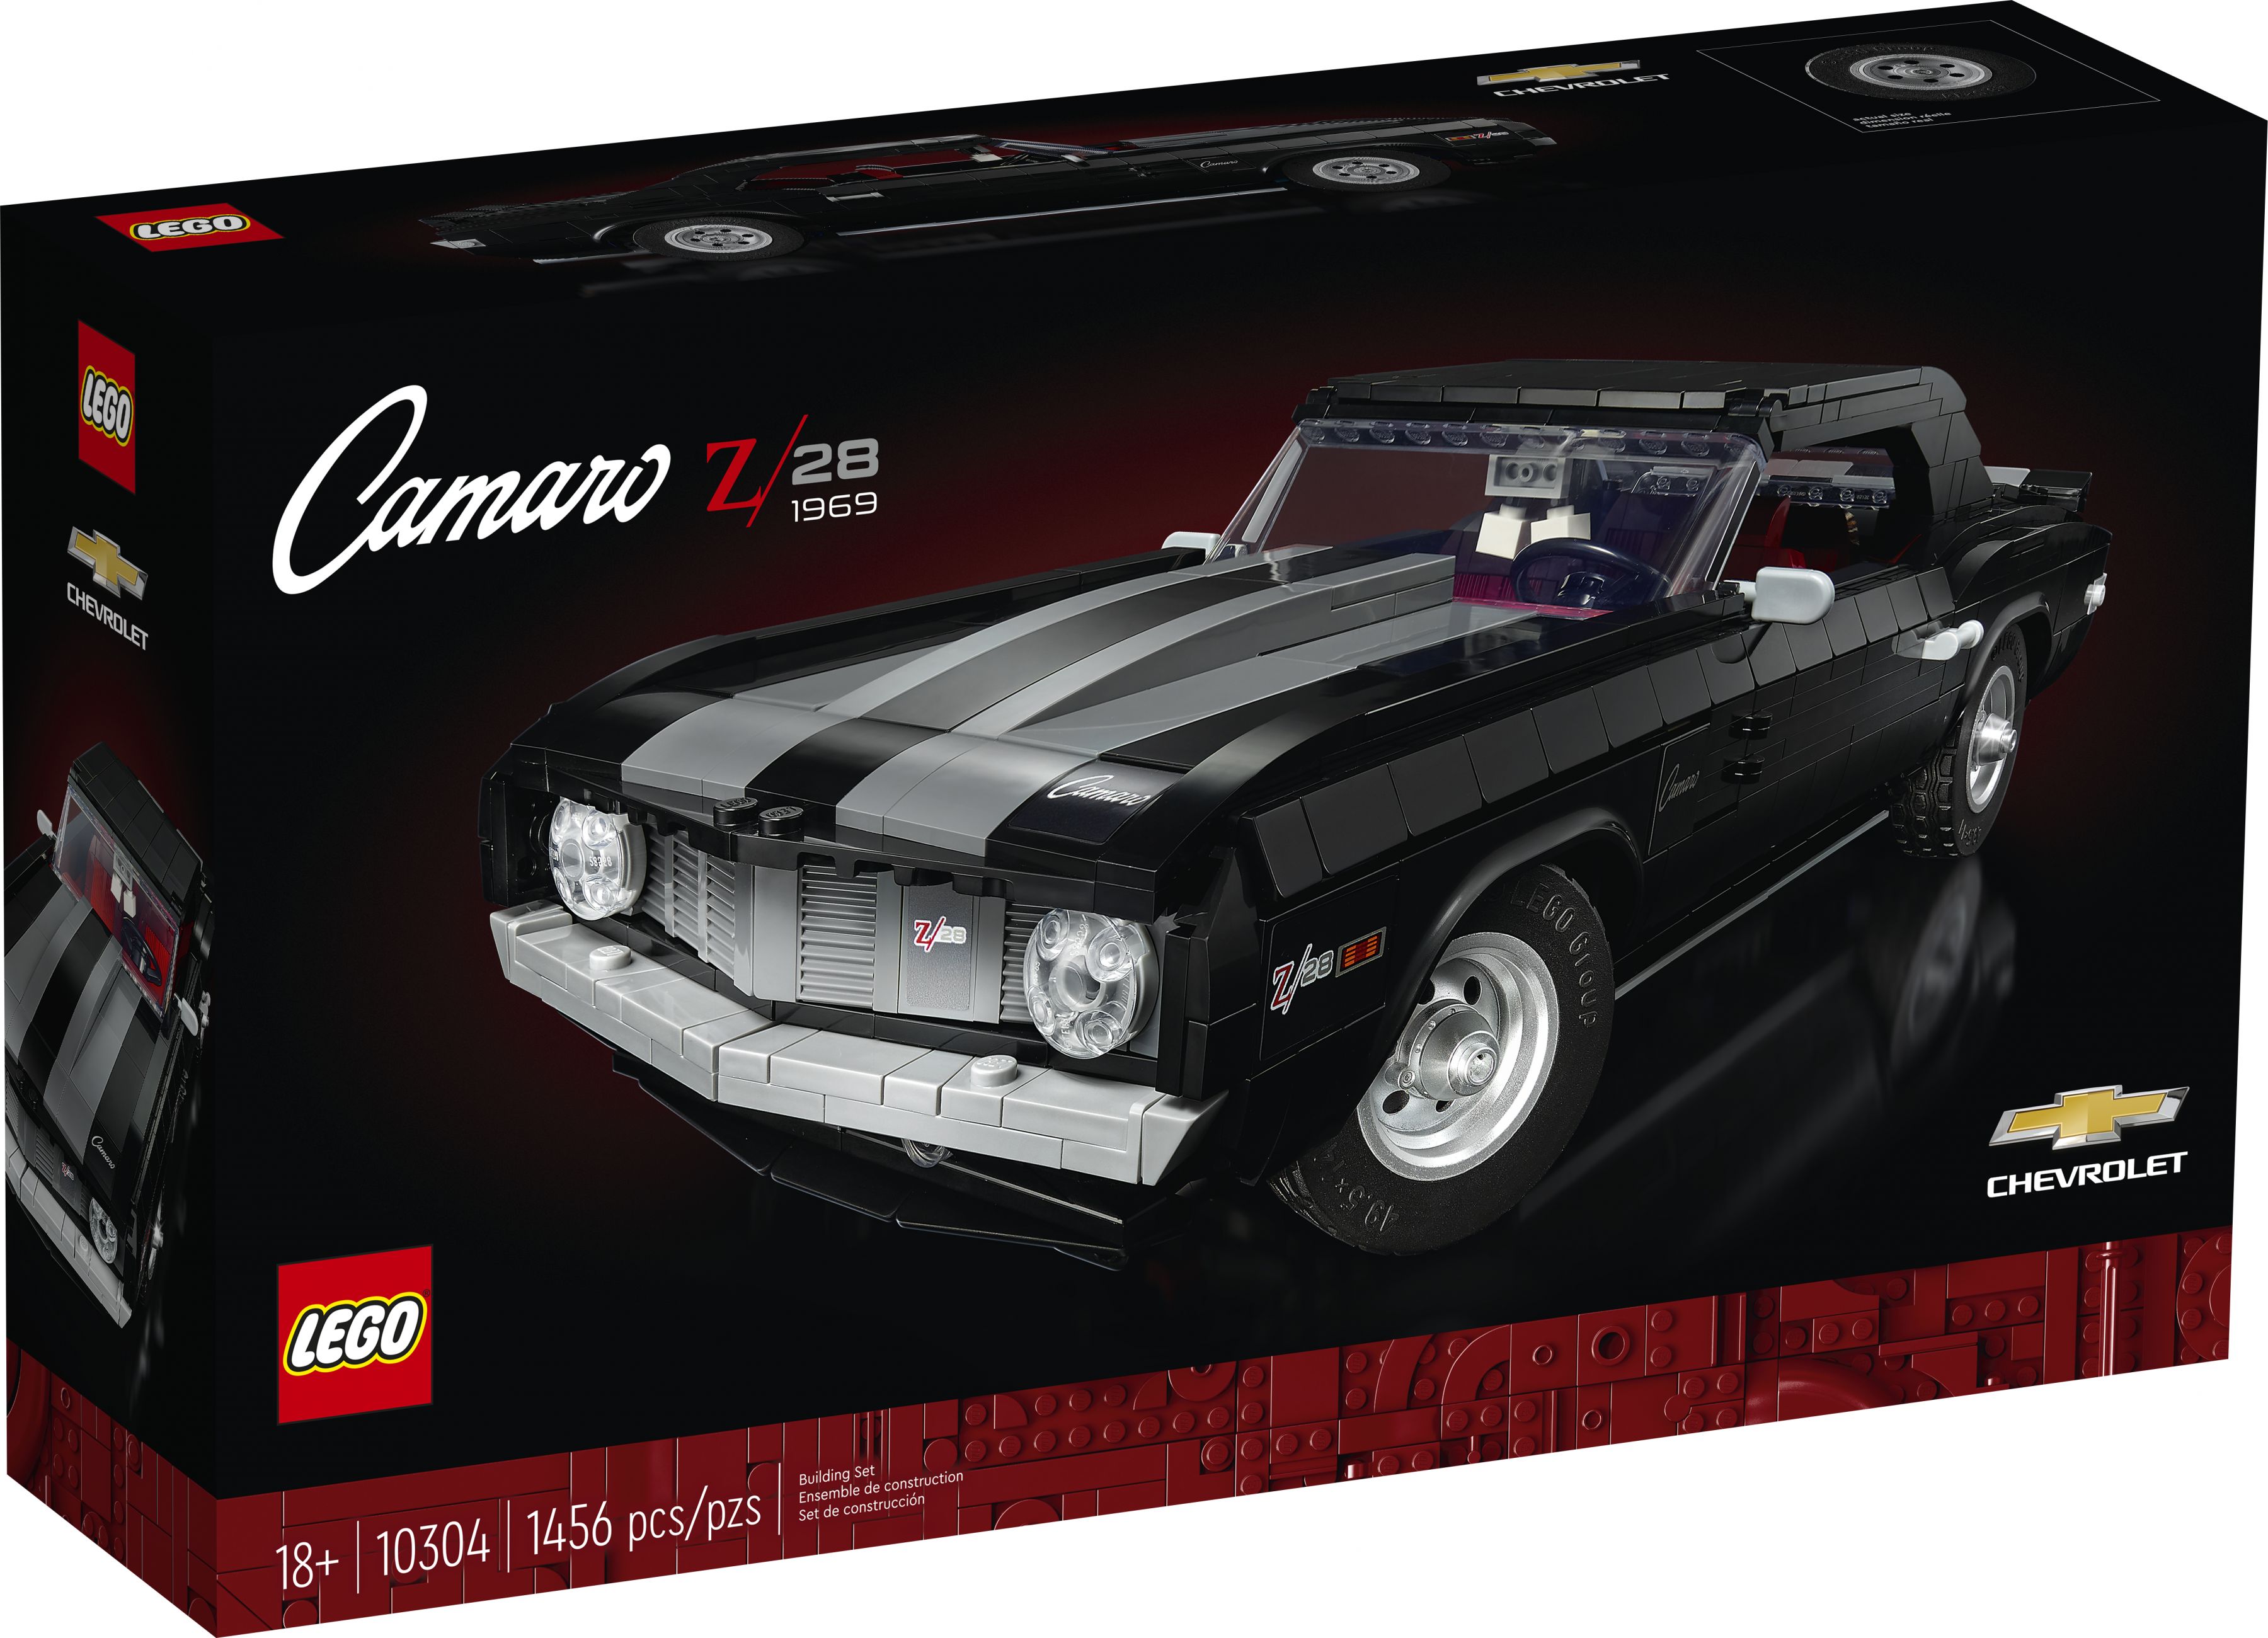 LEGO Advanced Models 10304 Chevrolet Camaro Z28 LEGO_10304_Box1_v39.jpg